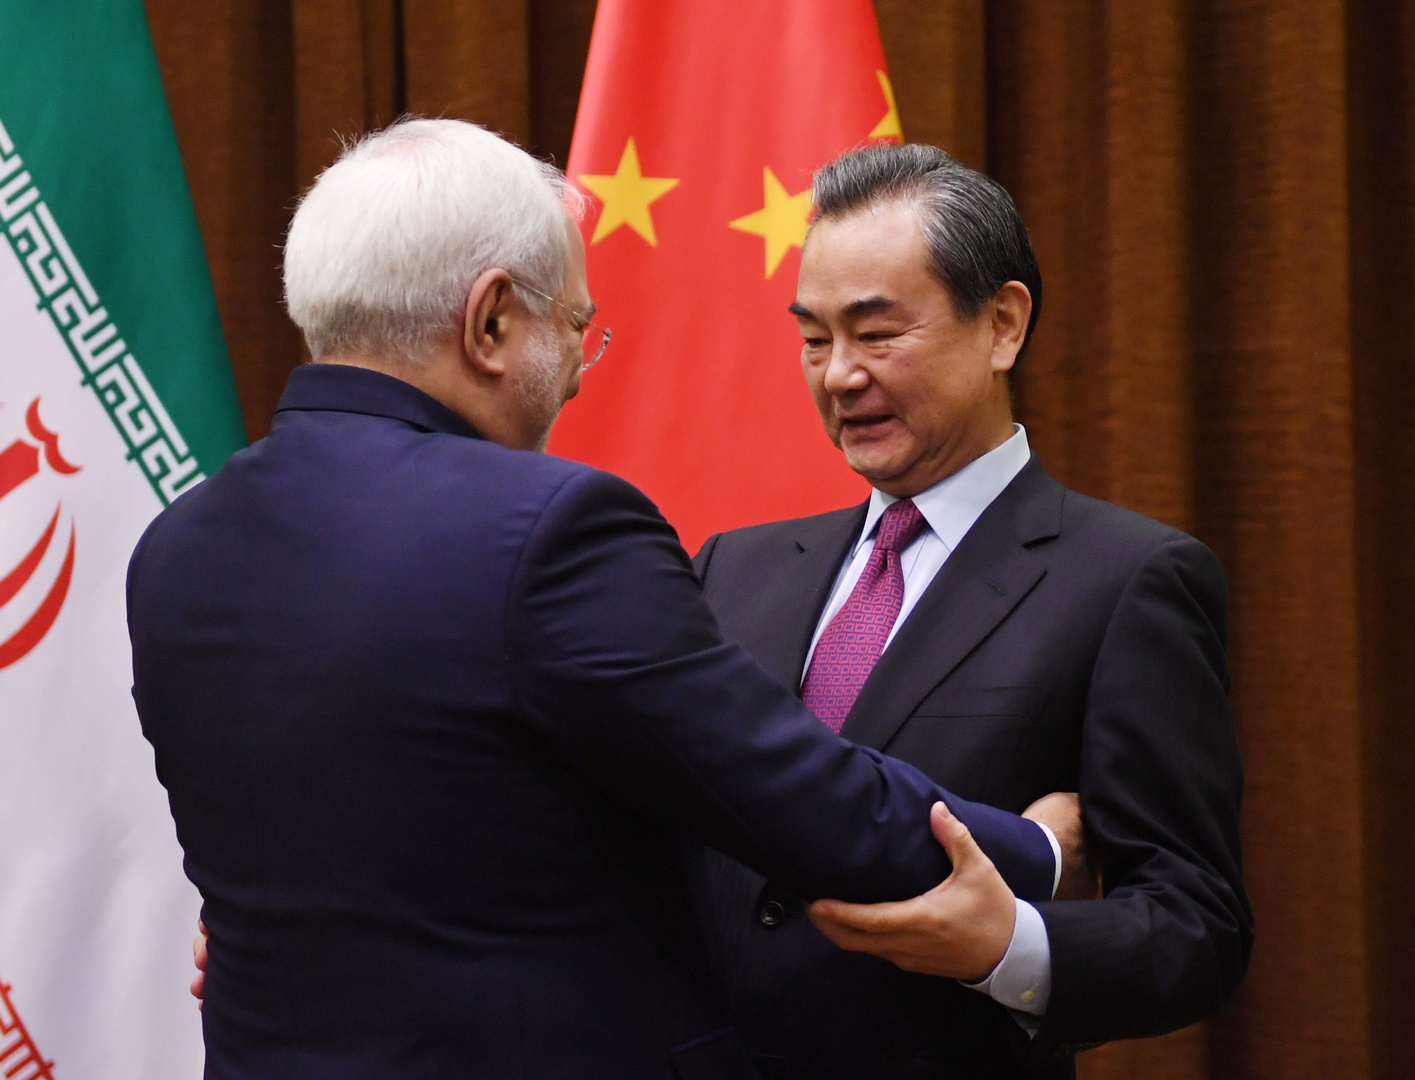 سفير إيران لدى بكين: وثيقة التعاون بين إيران والصين ليست ضد دولة ثالثة